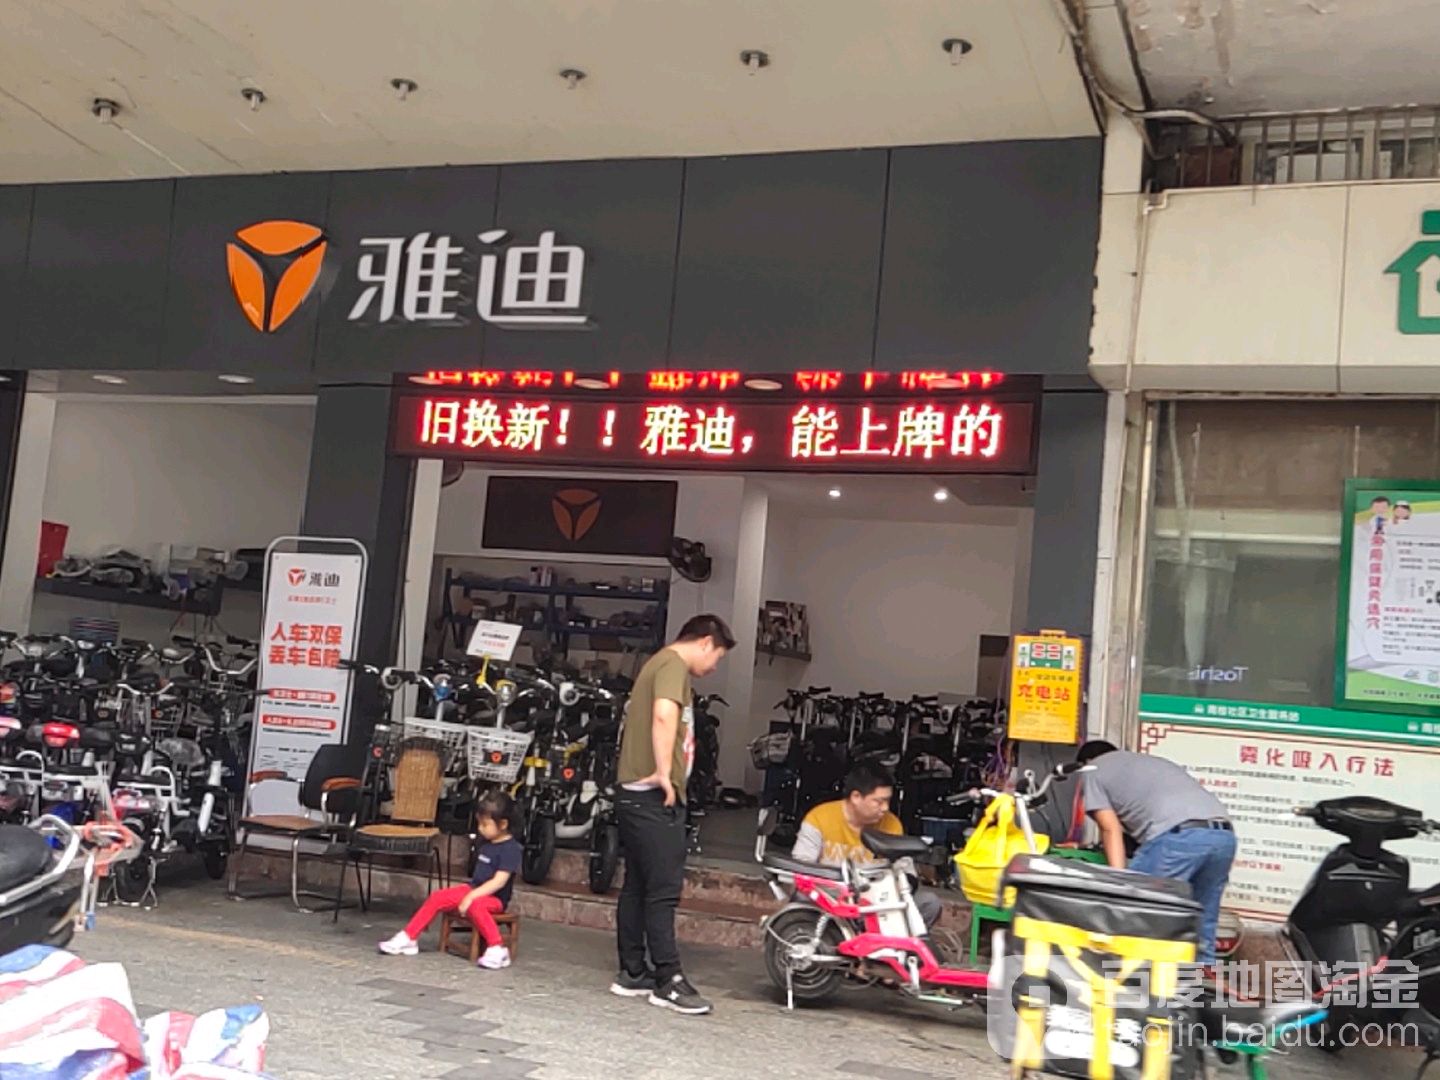 禅城区 标签: 电动车店 购物 商铺  雅迪电动车(南桂西路店)共多少人